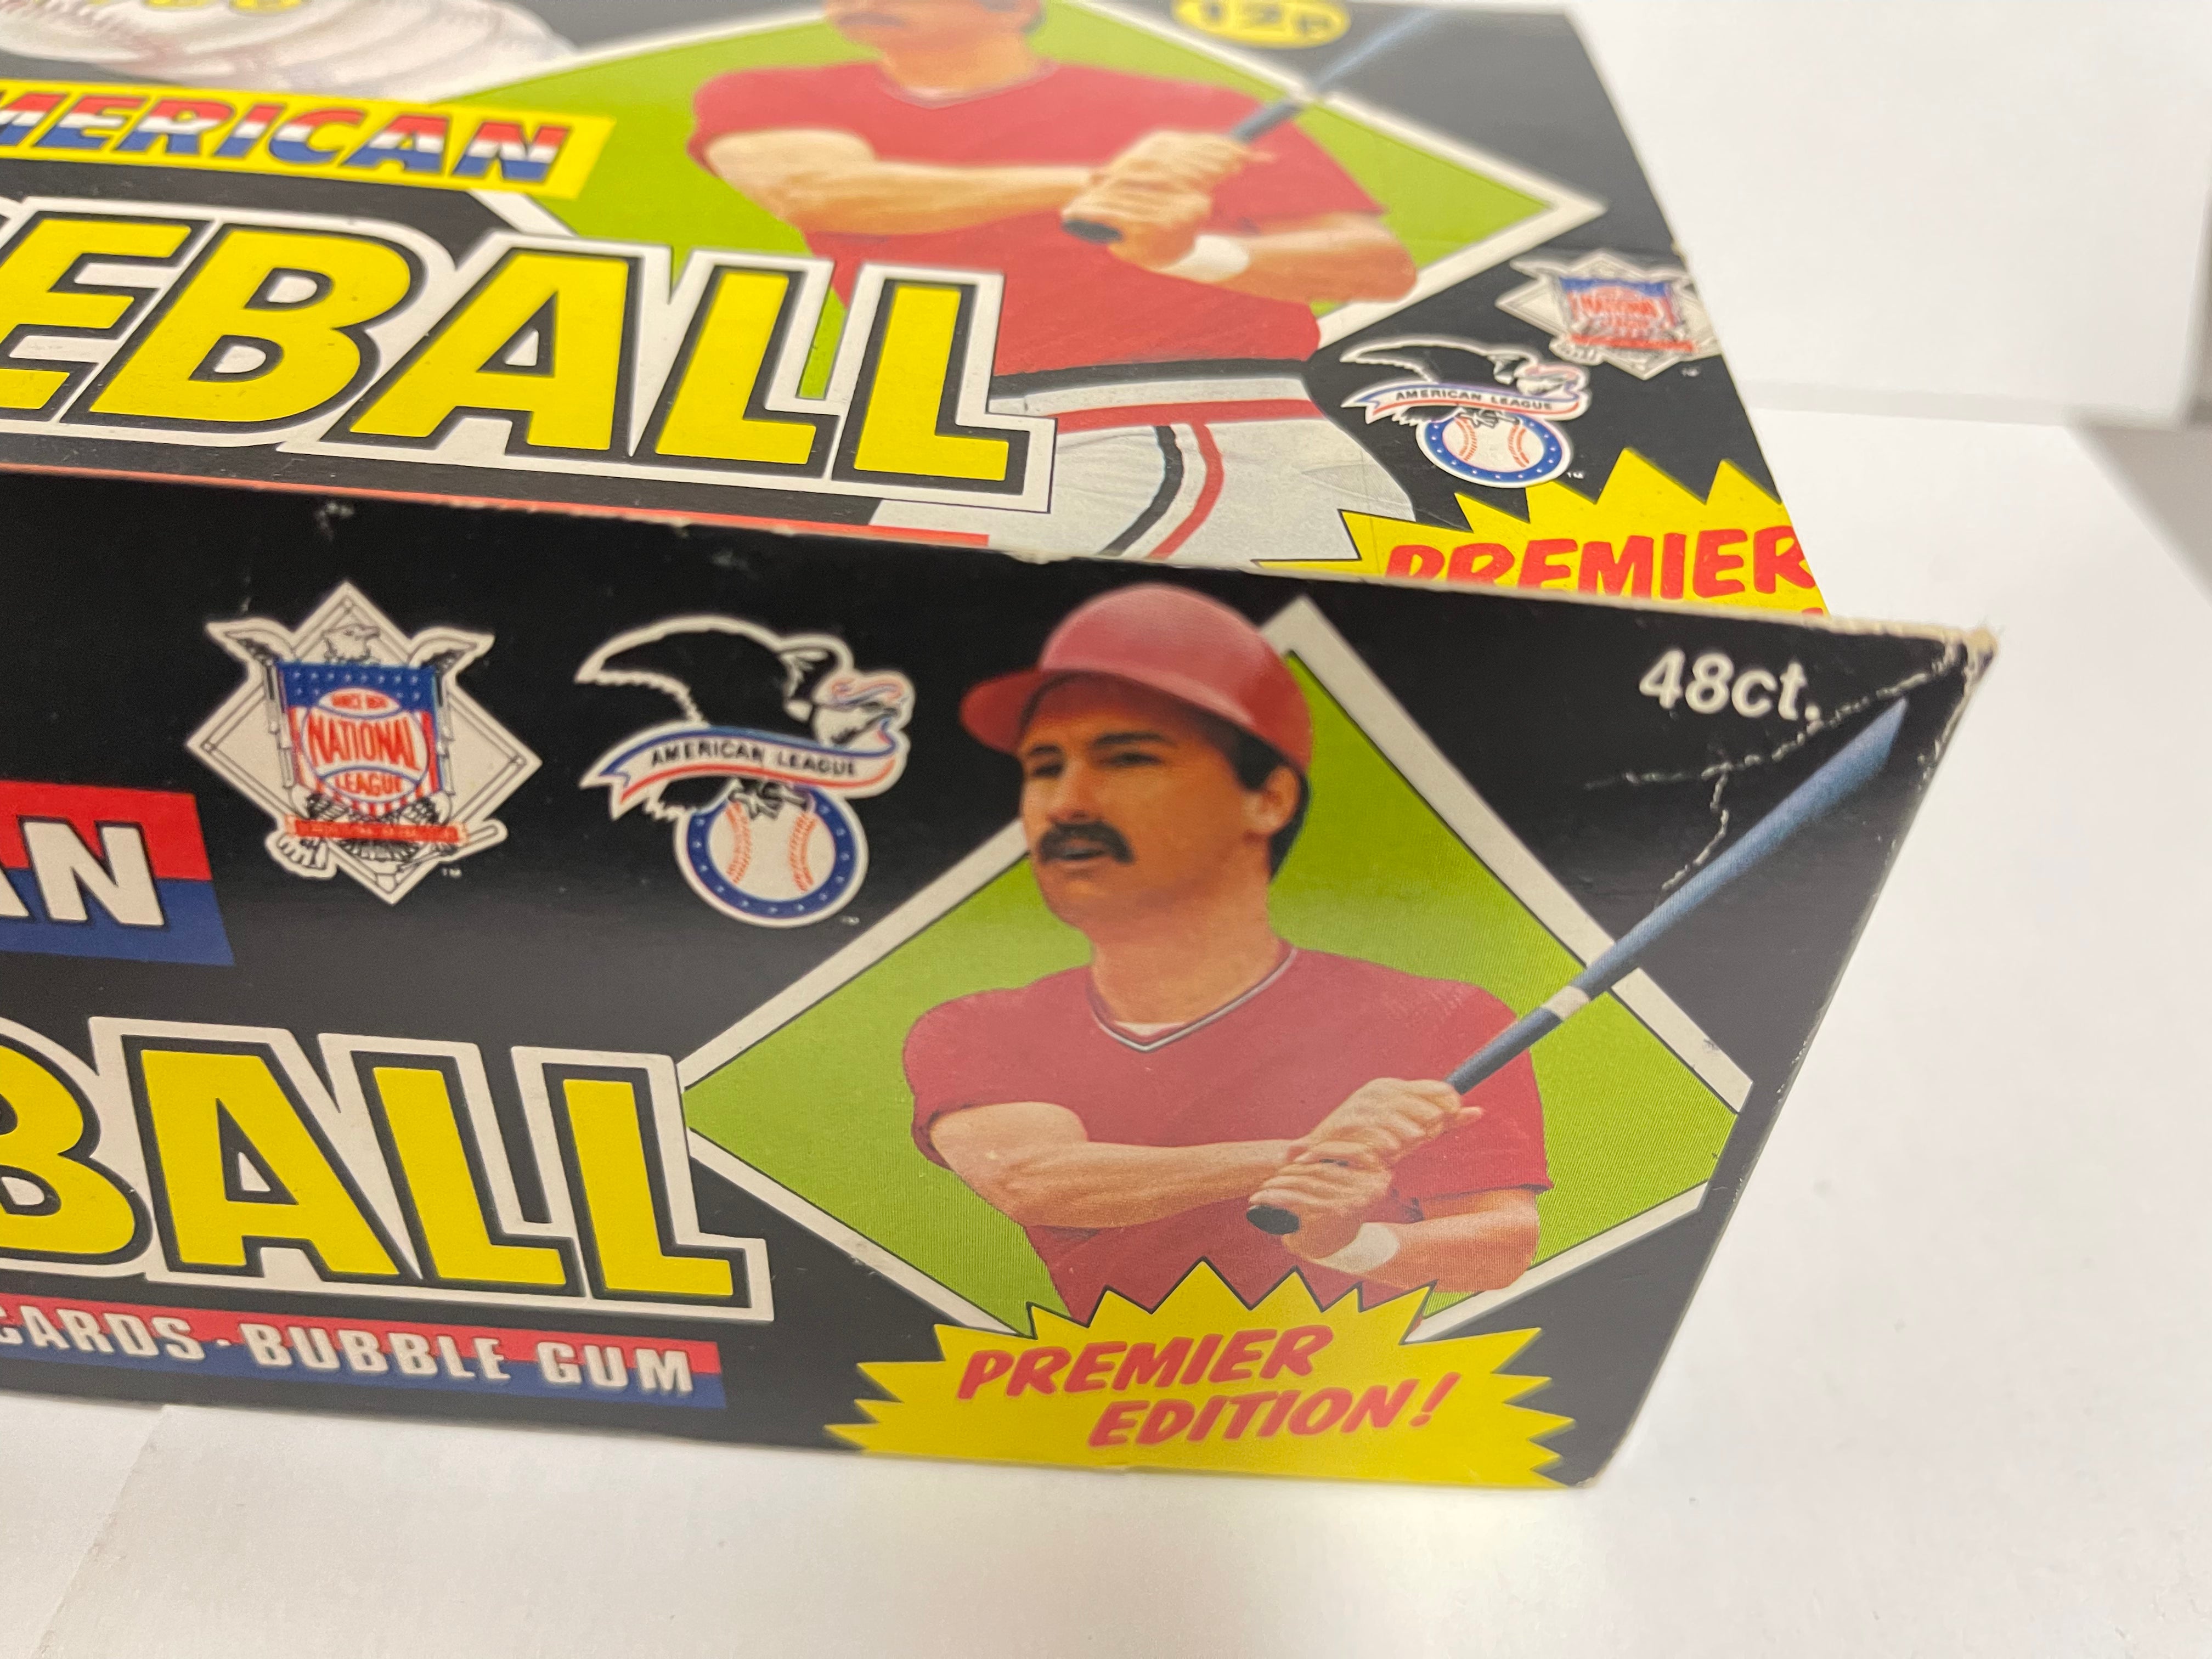 1988 Topps baseball UK version cards 48 packs box